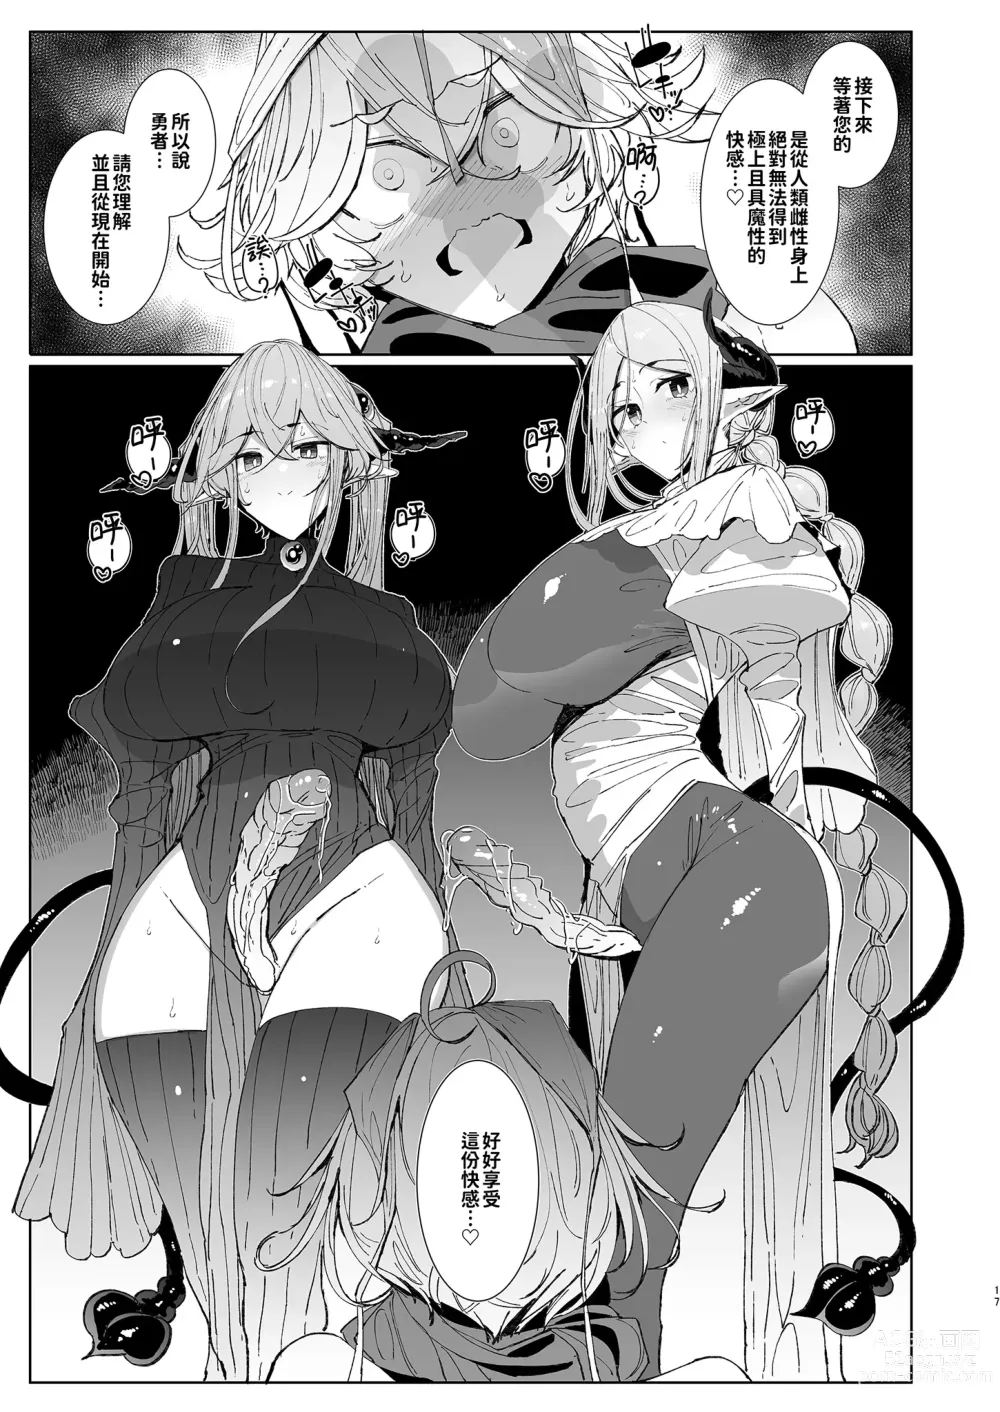 Page 17 of doujinshi 勇者和兩位扶她淫魔在討伐魔王後肯定要做那件事吧! (decensored)